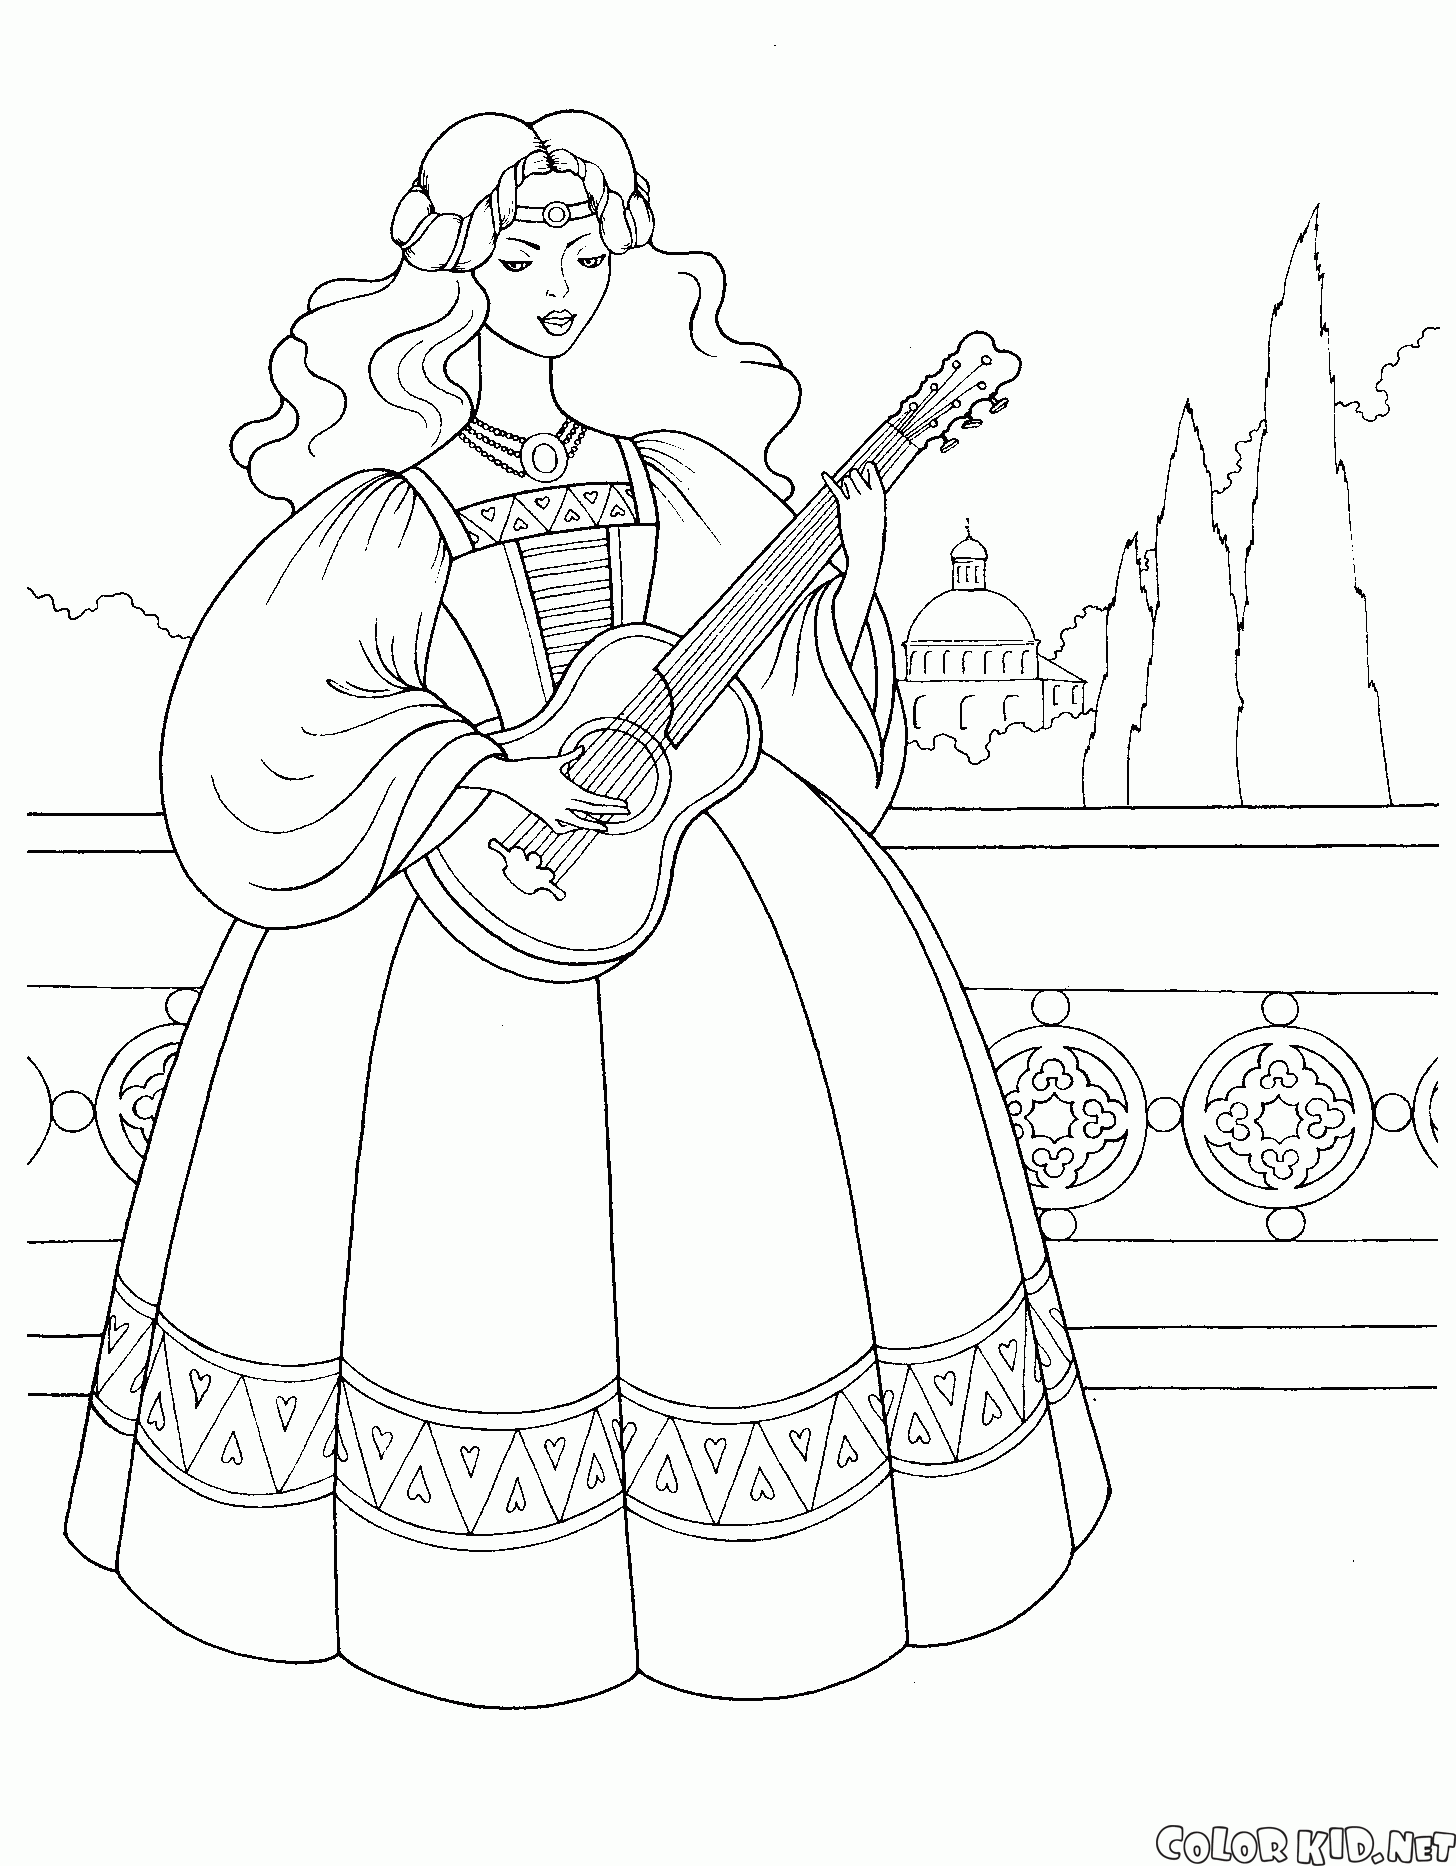 Princess with a guitar